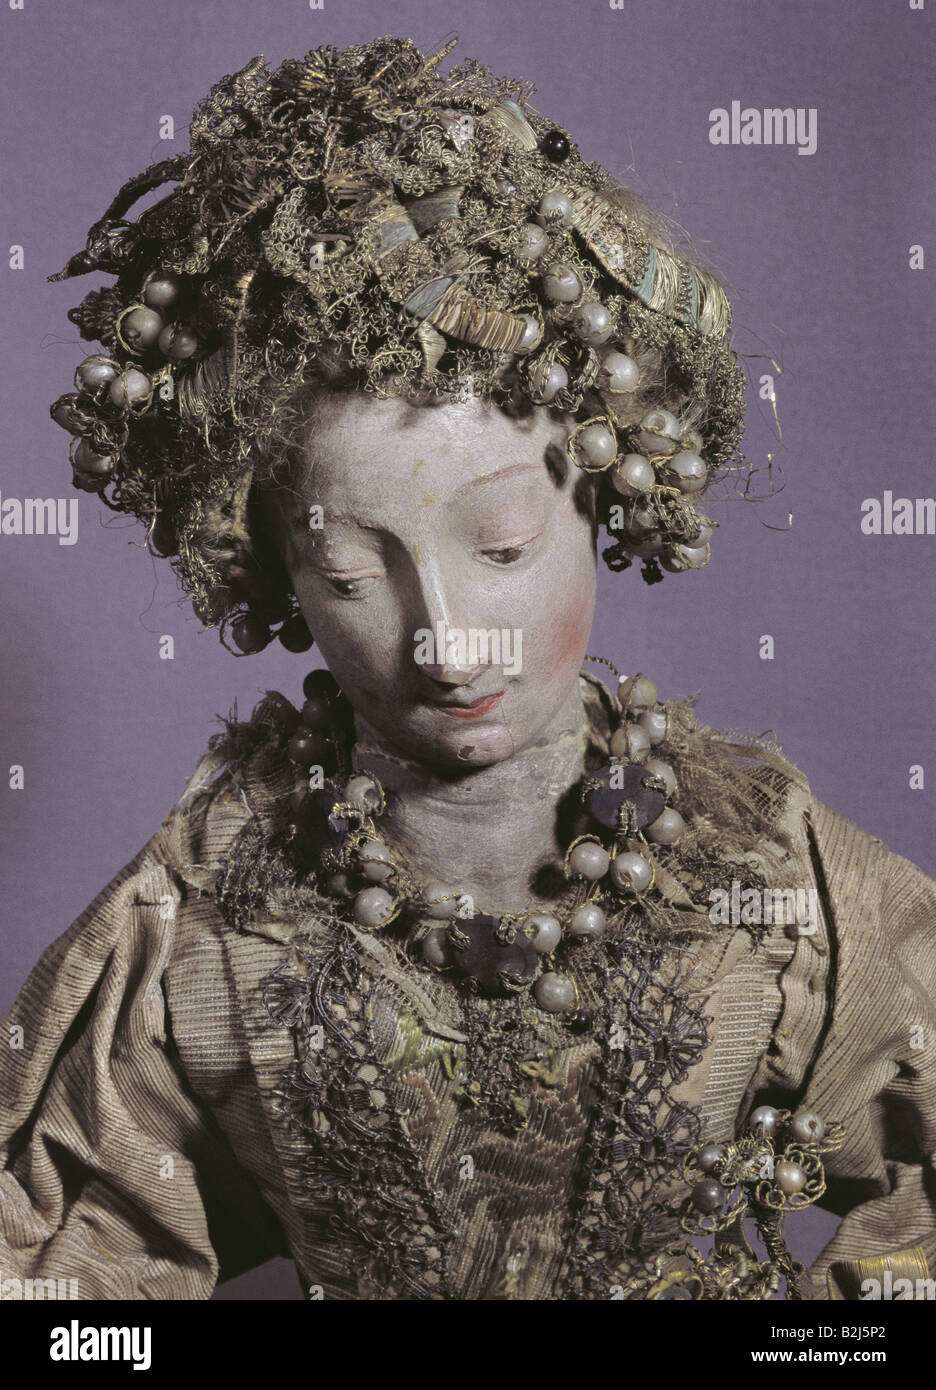 Giocattoli, bambole, 'Braut' (Bride), bambola di legno, vestiti, altezza 38 cm, Germania, metà 18th secolo, Museo cittadino di Monaco, Foto Stock